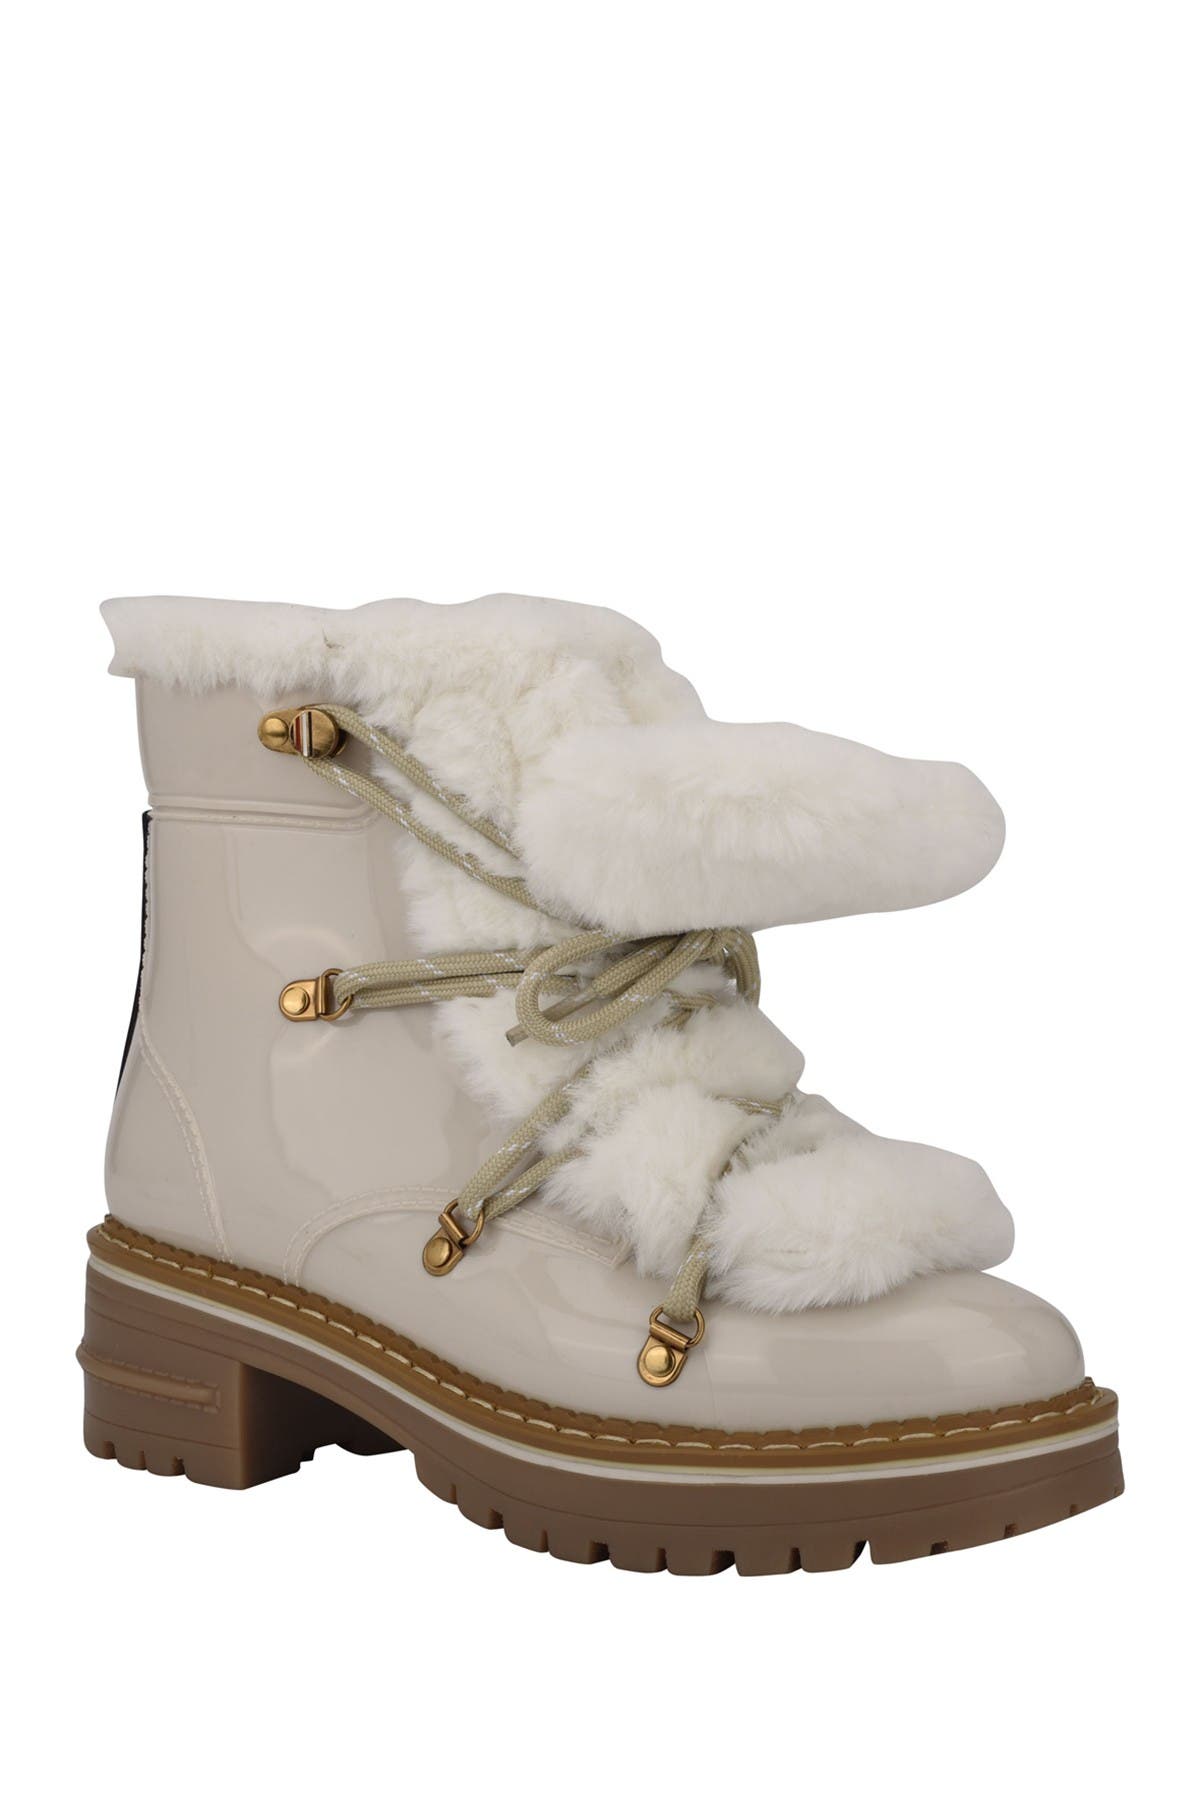 hilfiger winter boots